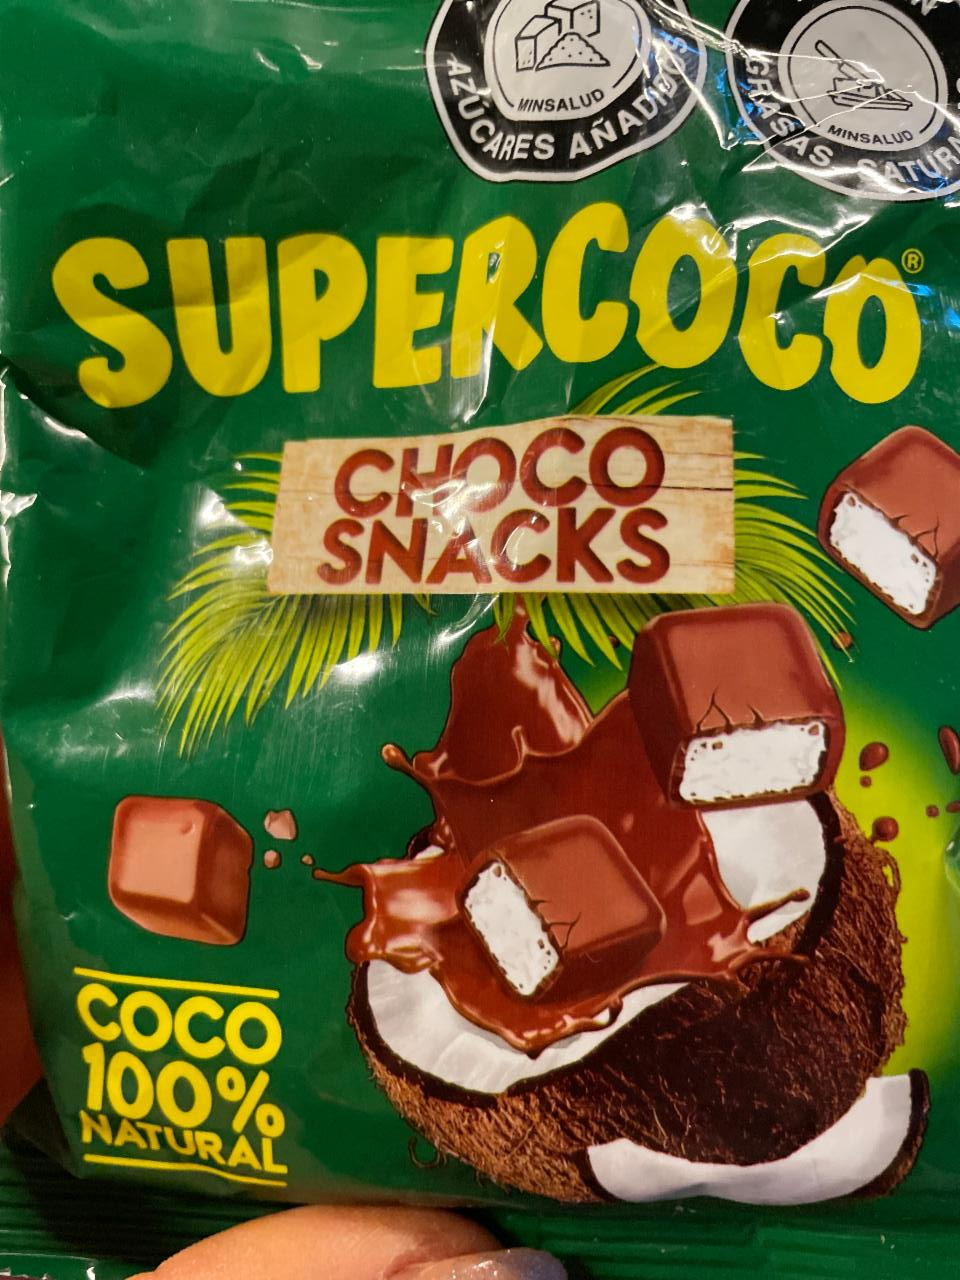 Fotografie - Choco Snacks Coco Supercoco